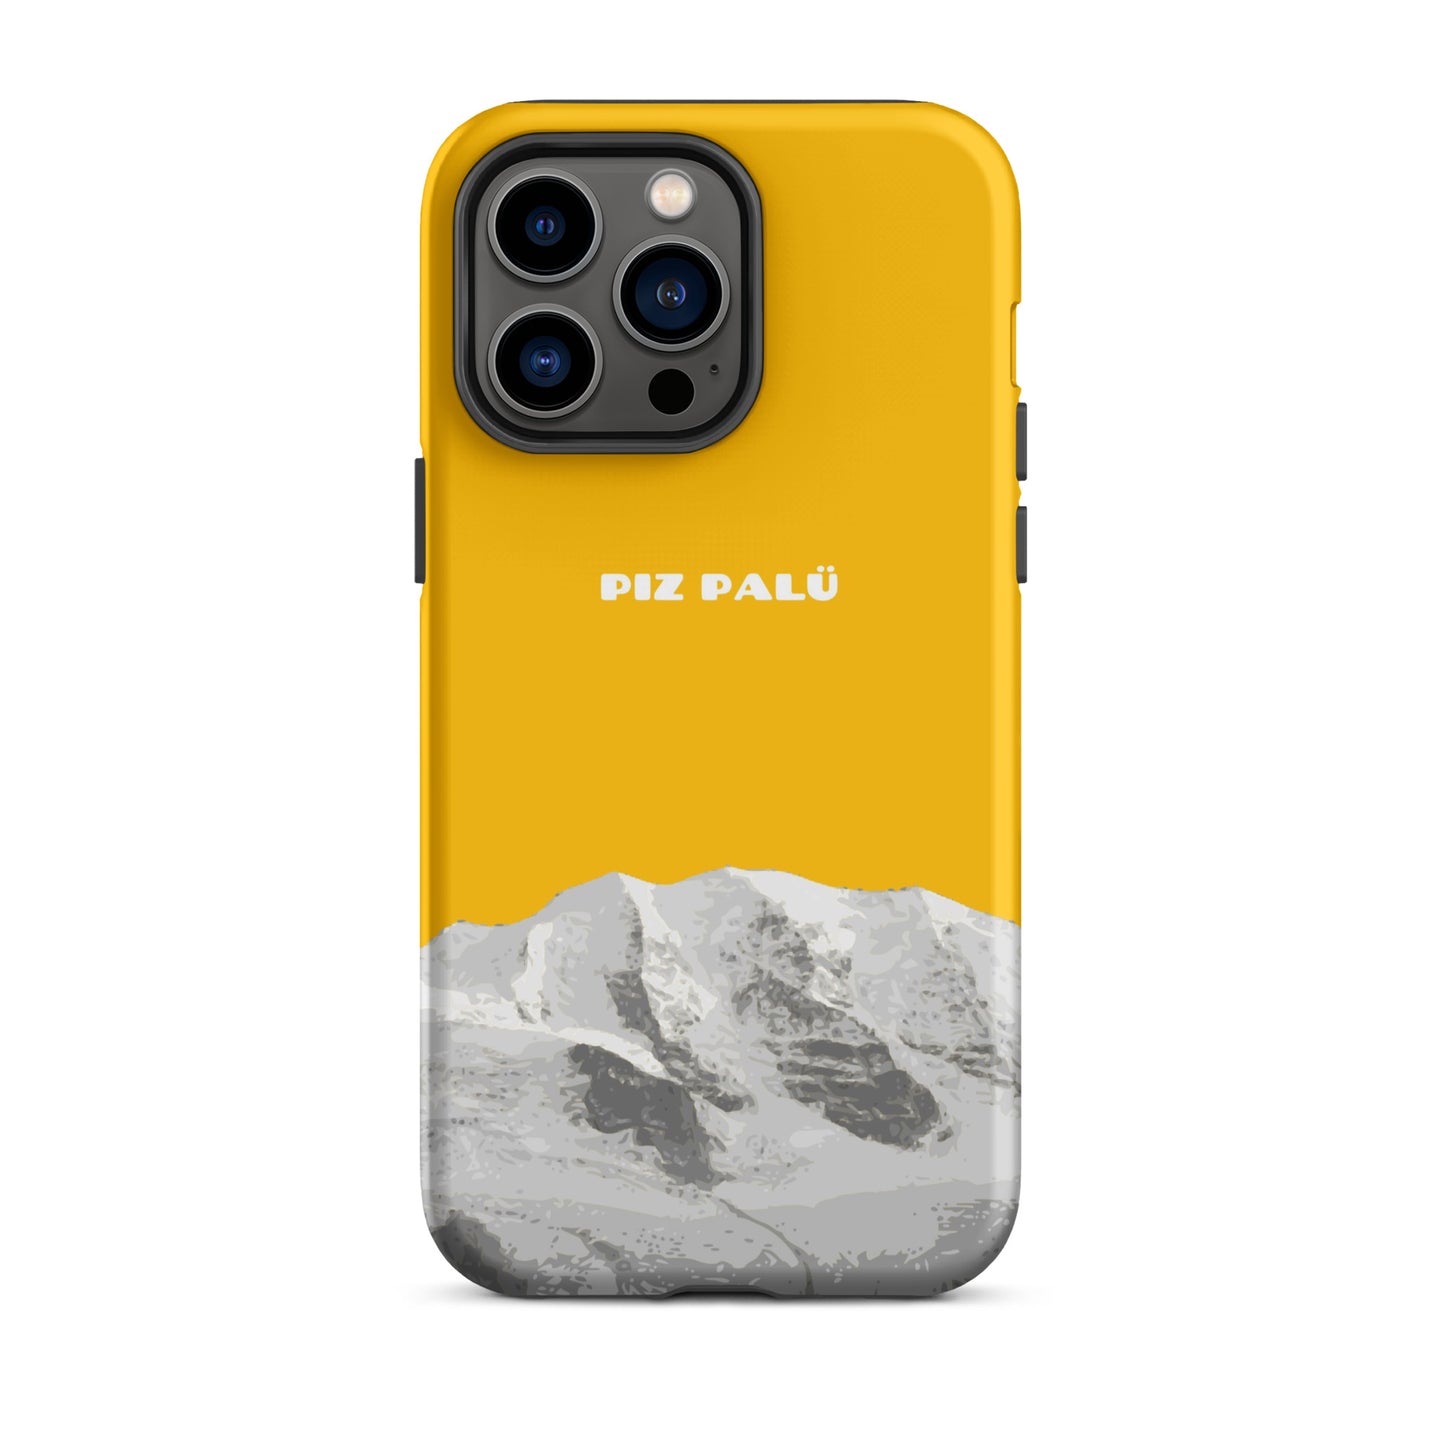 Hülle für das iPhone 14 Pro Max von Apple in der Farbe Goldgelb, dass den Piz Palü in Graubünden zeigt.